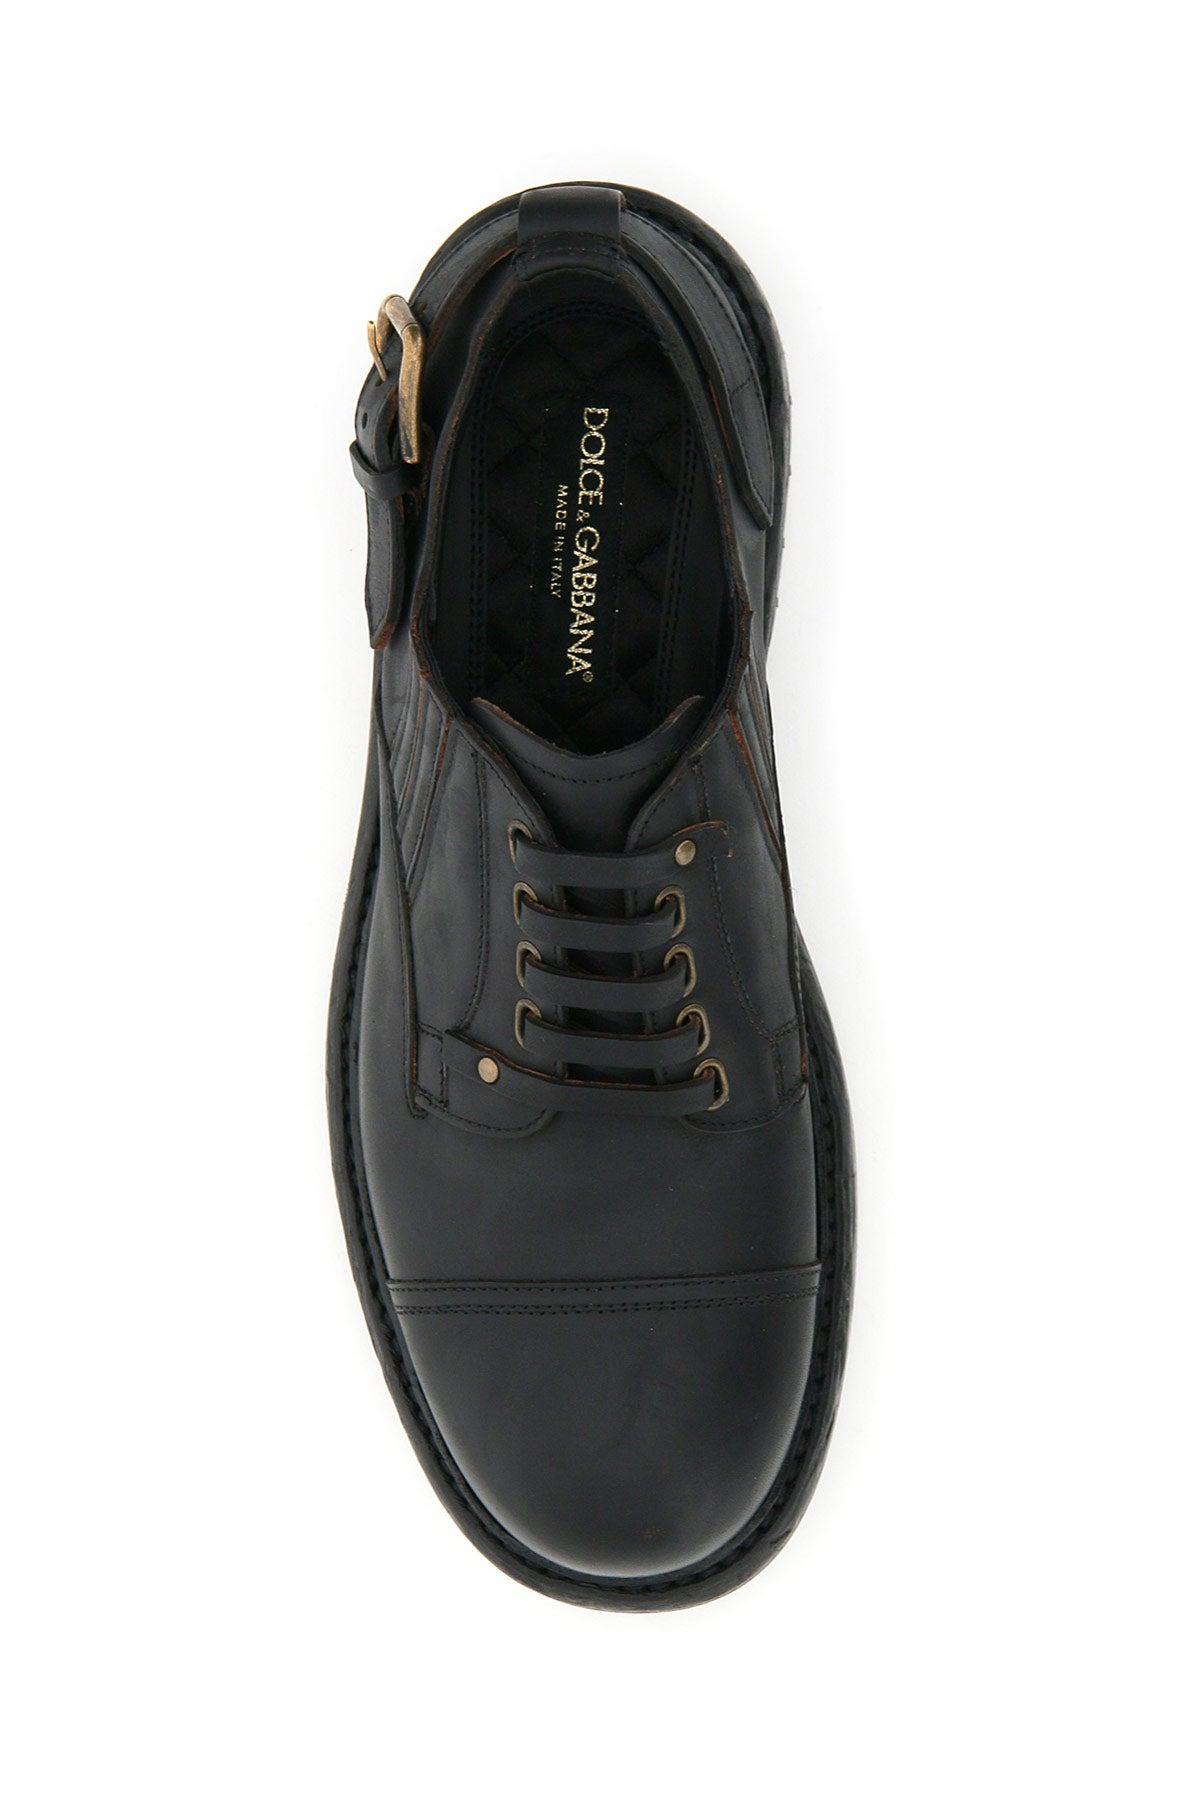 Bernini Slip-on Shoes